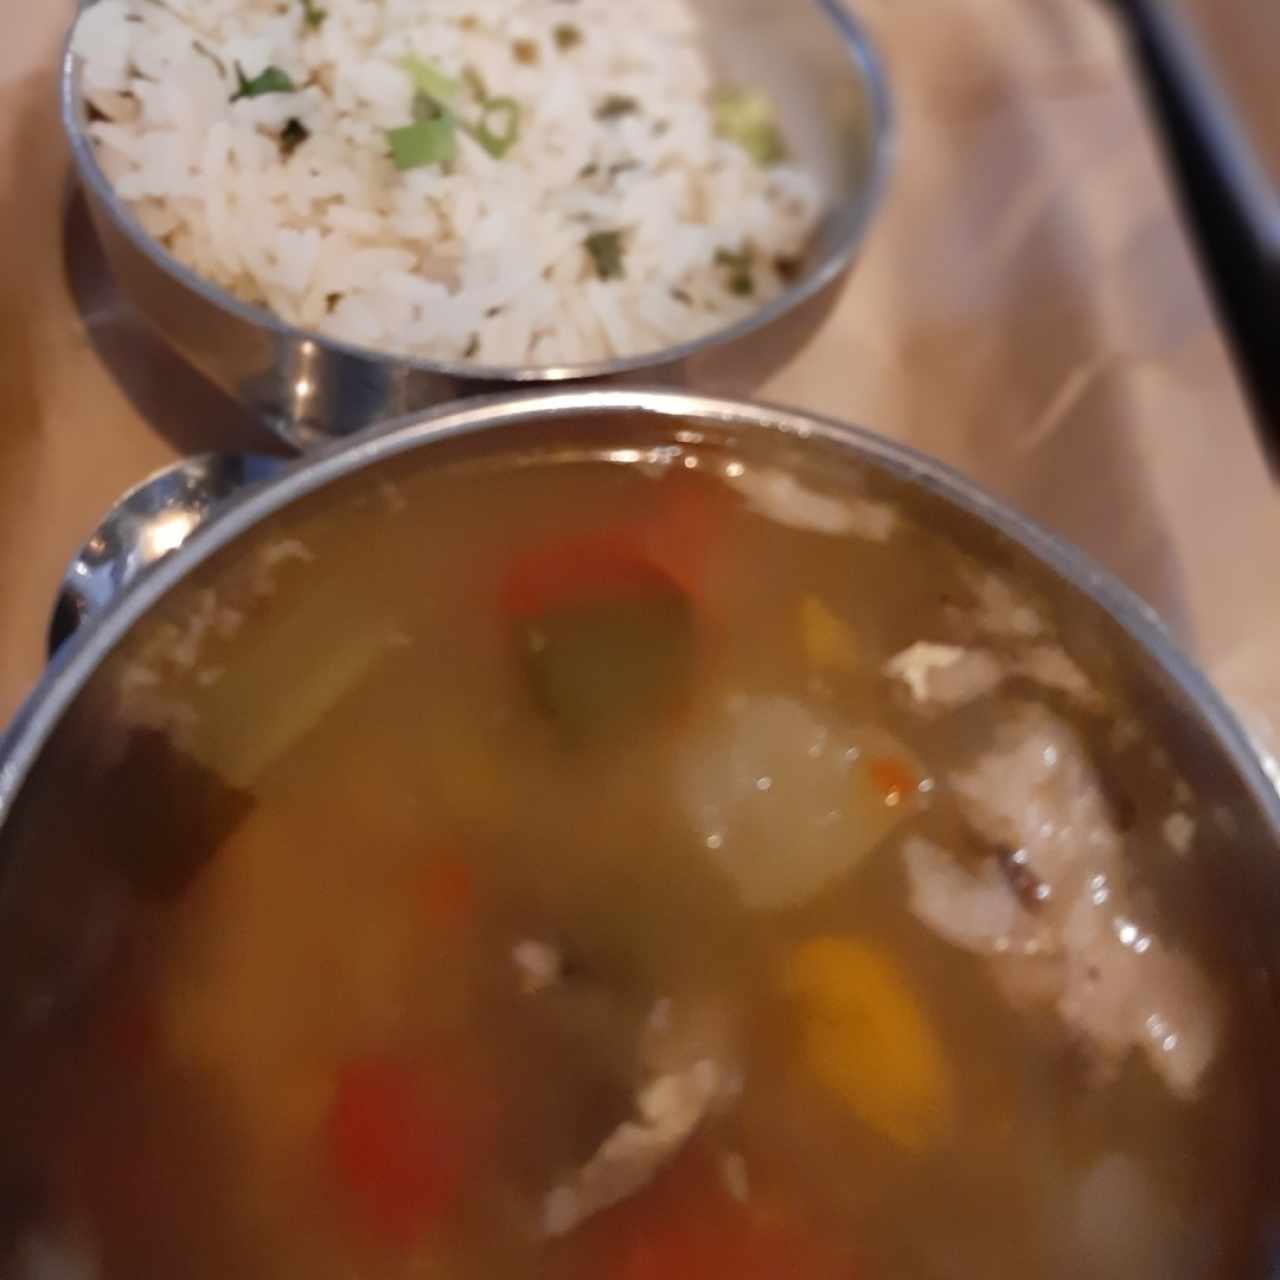 sopa de pescado